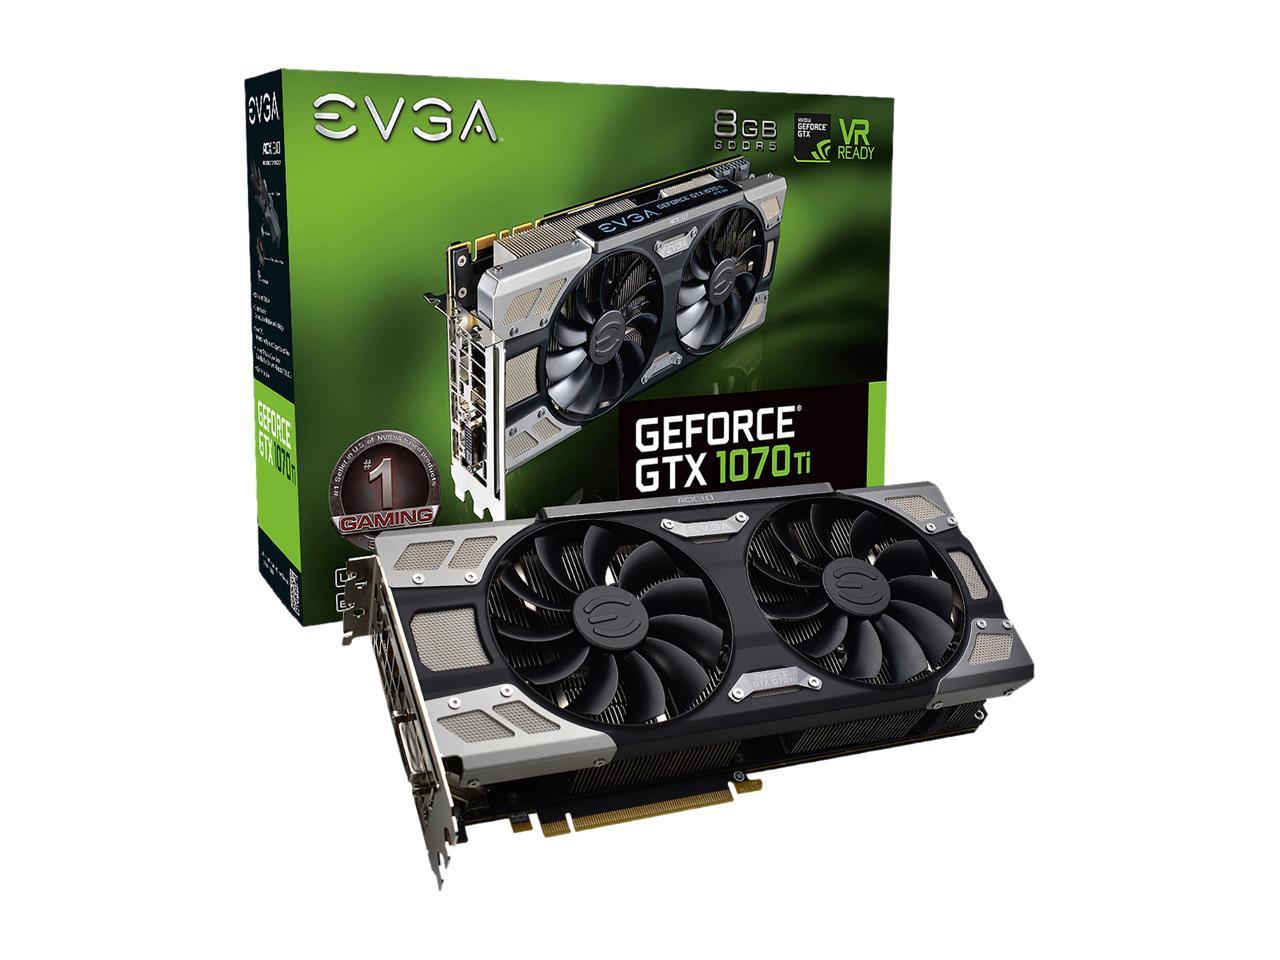 EVGA GeForce GTX 1070 Ti 8GB GDDR5 PCI Express 3.0 SLI Support Video Card  08G-P4-6678-KR